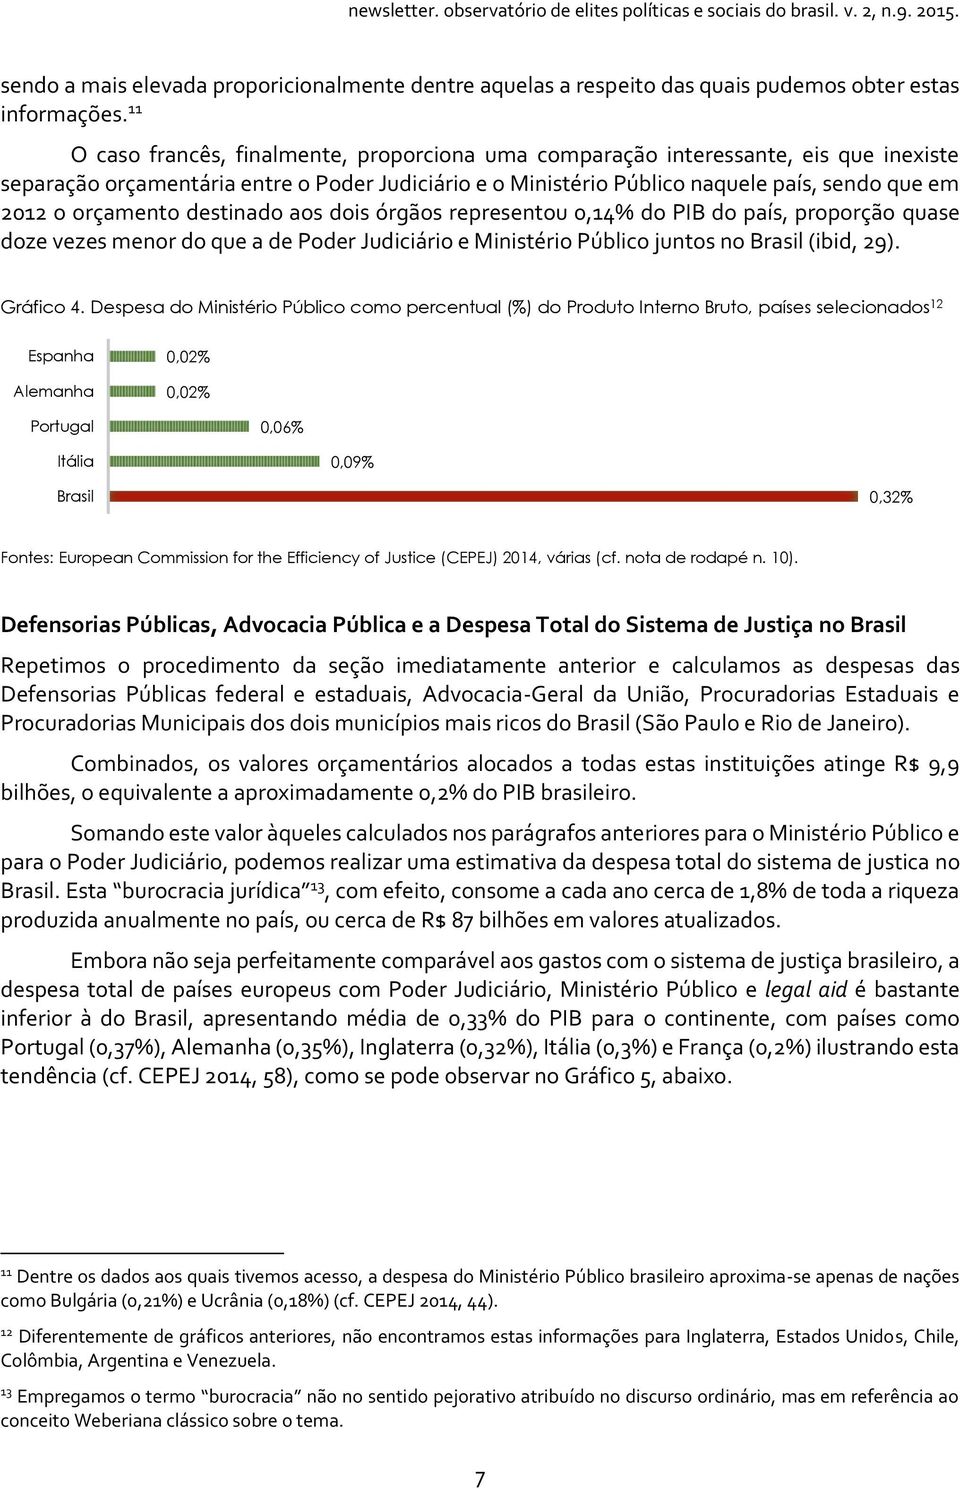 orçamento destinado aos dois órgãos representou 0,14% do PIB do país, proporção quase doze vezes menor do que a de Poder Judiciário e Ministério Público juntos no Brasil (ibid, 29). Gráfico 4.